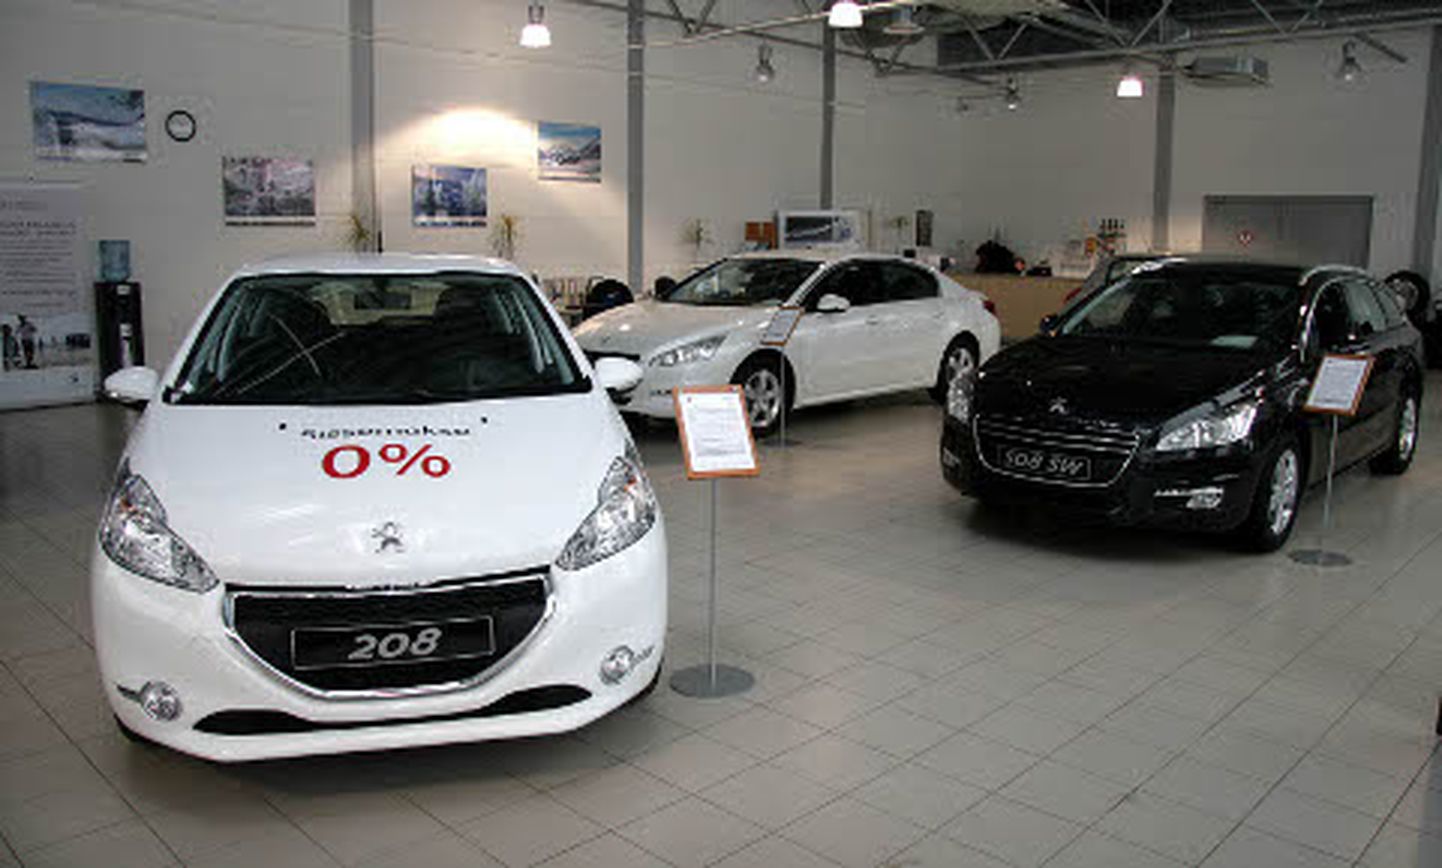 Vahepeal varjusurmas Peugeot on taas müügile hoo sisse saanud. Müüduimaks mudeliks Ida-Virumaal oli eelmisel aastal keskklassi 508, mis vähema raha eest pakub luksusklassi varustuses autot.